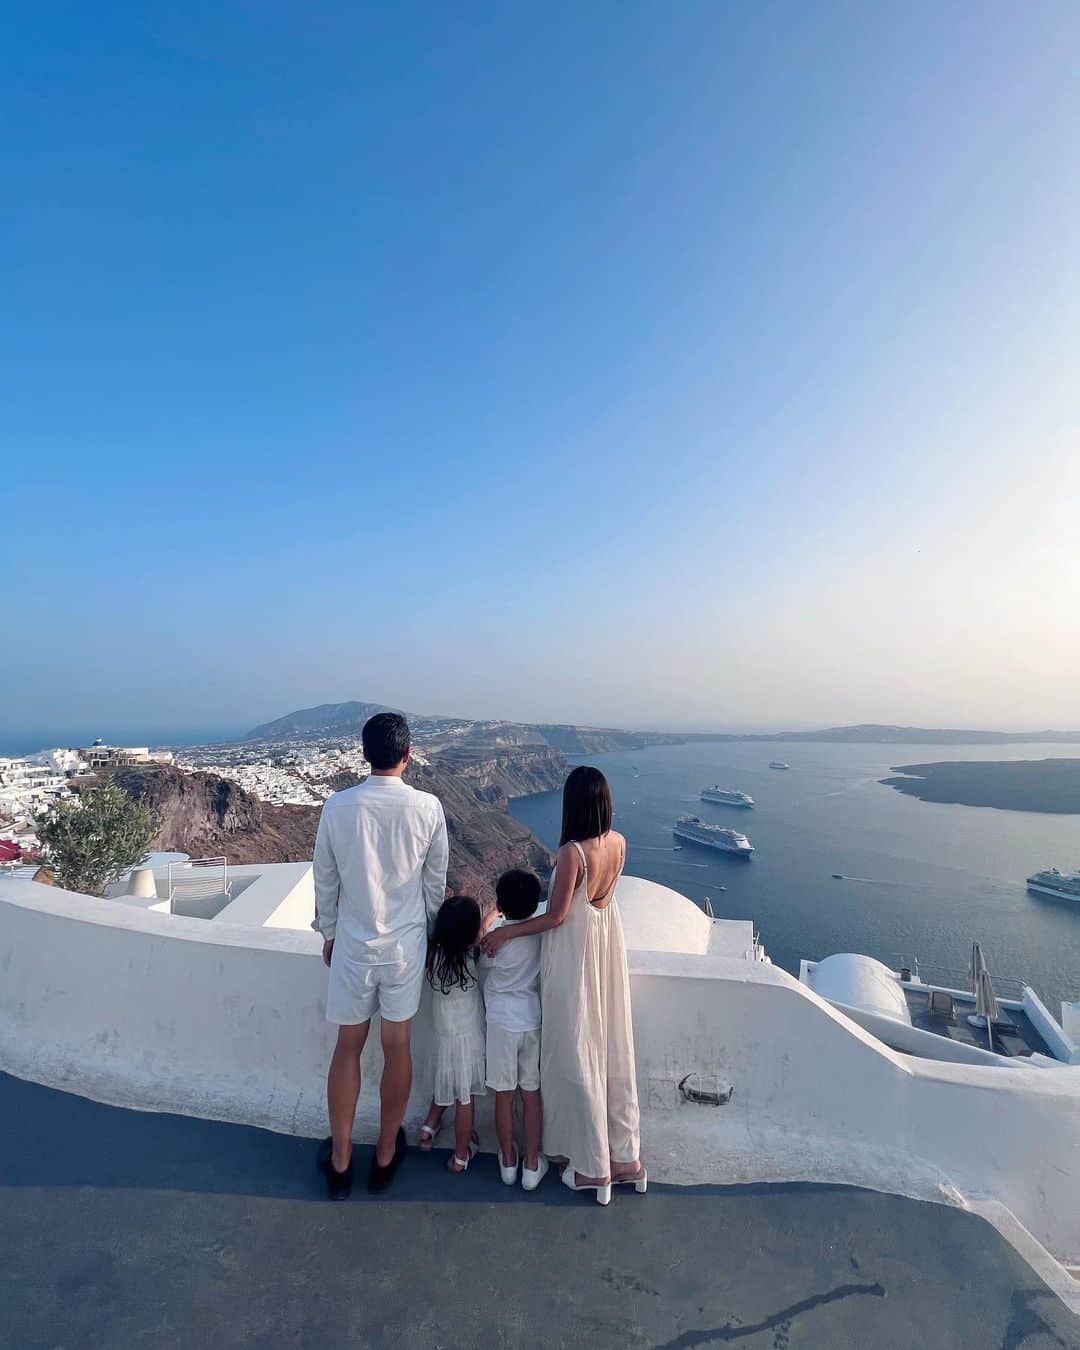 Remiのインスタグラム：「Greek isles round trip🛳🇬🇷 ギリシャの島々を巡るクルーズ旅💙 美しい島々に魅せられて、毎日が感動の連続🥹  写真はサントリーニ島にて。 素敵なスポットでフォトツアーをしてきたので、また載せていきたいと思います！ これはiPhoneの写真だけど、プロの腕で綺麗に撮れた🤍  thank you📷  @vivianbali_photography  ------------ 📍#Santorini #Greece #🇬🇷  ⚓️Norwagian @norwegiancruiseline  🛳Breakaway 👨‍👩‍👧‍👦 @hh.channel2023  🗓 2023.10.3-13  #サントリーニ島 #ギリシャ旅行 #ギリシャクルーズ #クルーズ旅  #ノルウェージャン #ヨーロッパクルーズ #地中海クルーズ #エーゲ海クルーズ #子連れクルーズ #子連れ旅行 #santoriniisland #santorinigreece #norwegian #norwegiancruiseline #norwegianbreakaway #cruise #cruiselife #familycruise #remi_world2023」